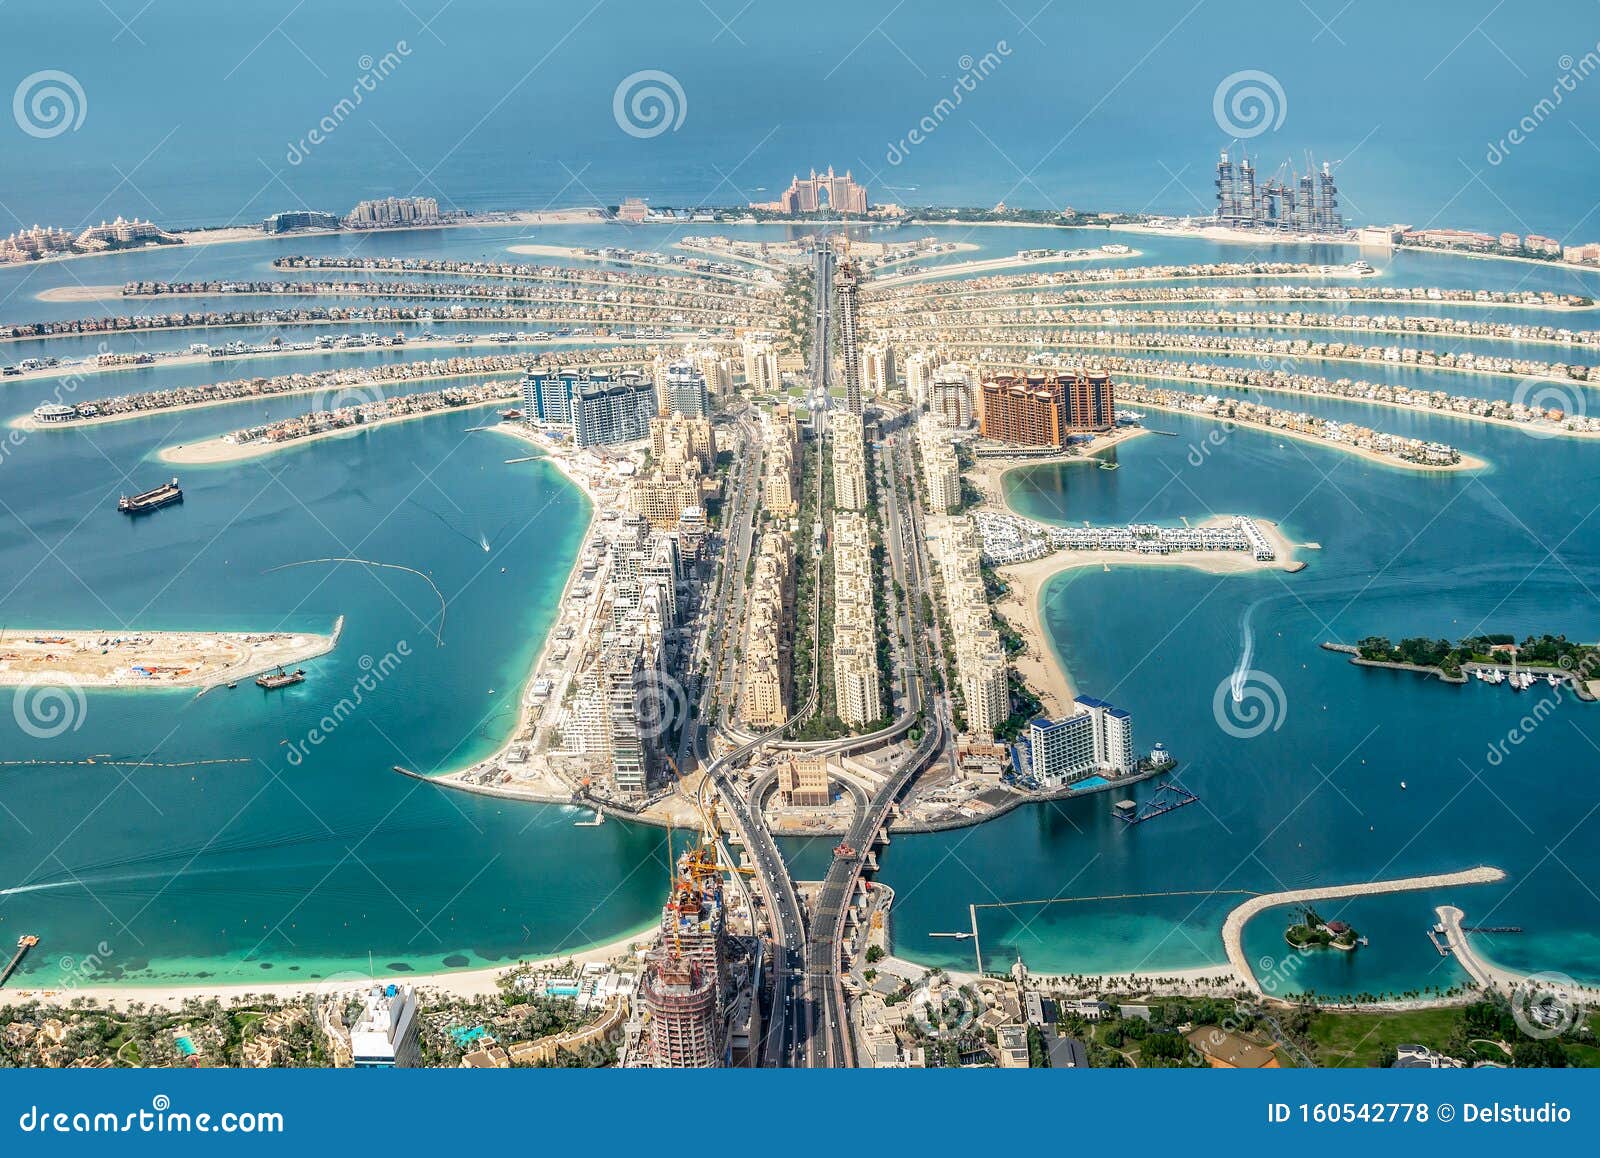 aerial view of dubai palm jumeirah island, united arab emirates